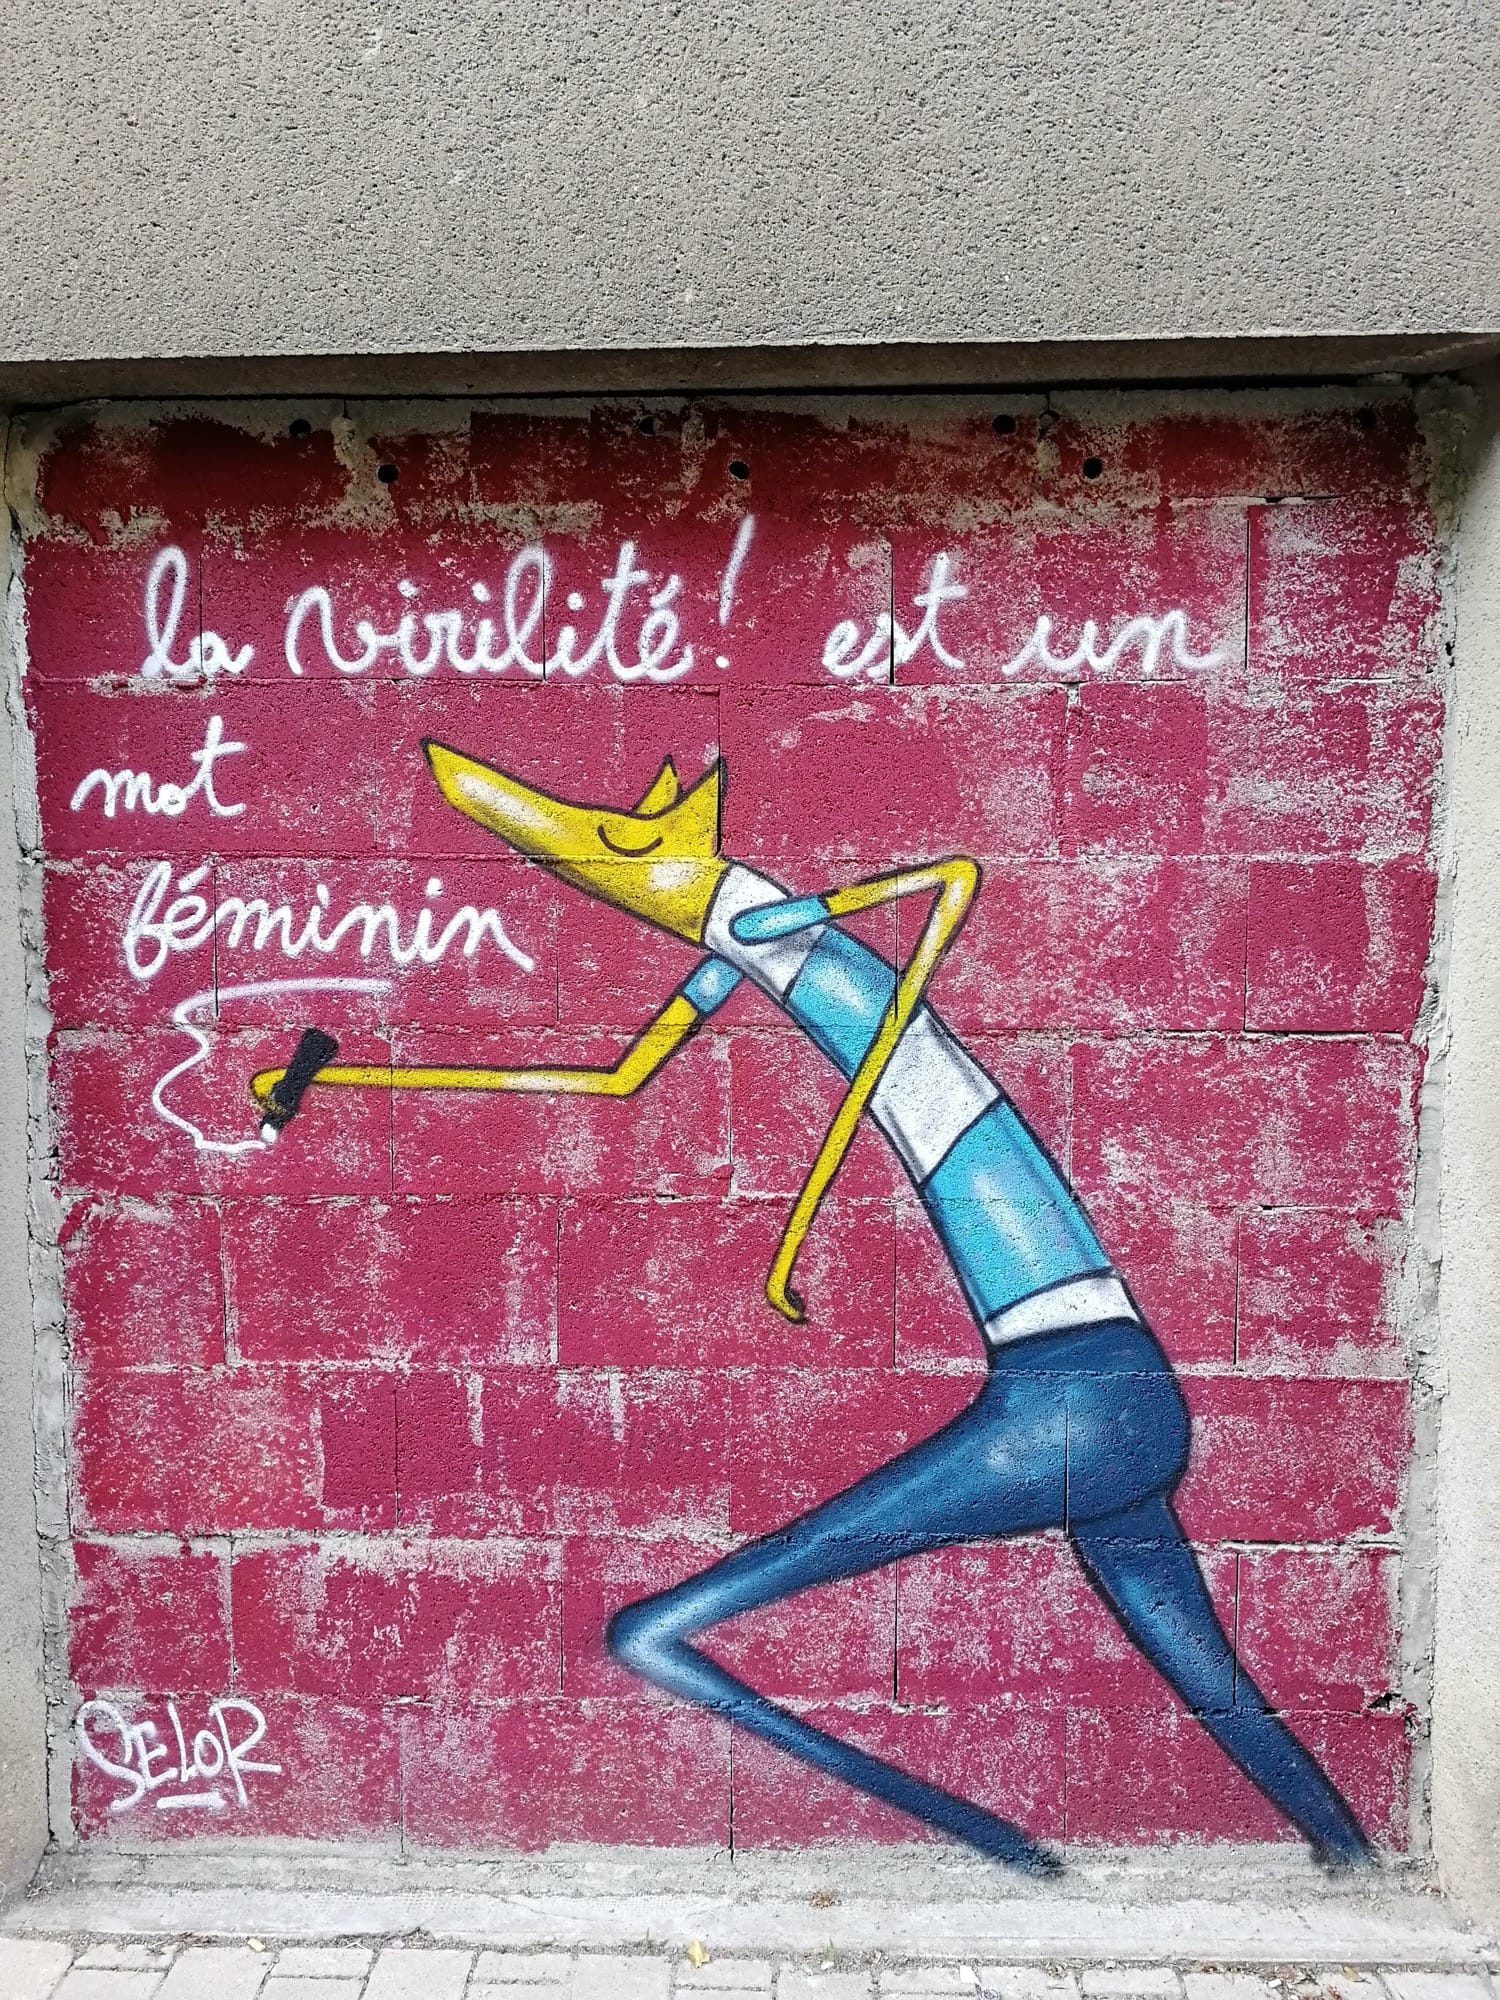 Graffiti 2979 La virilité est un mot féminin by the artist Selor captured by Rabot in Nantes France